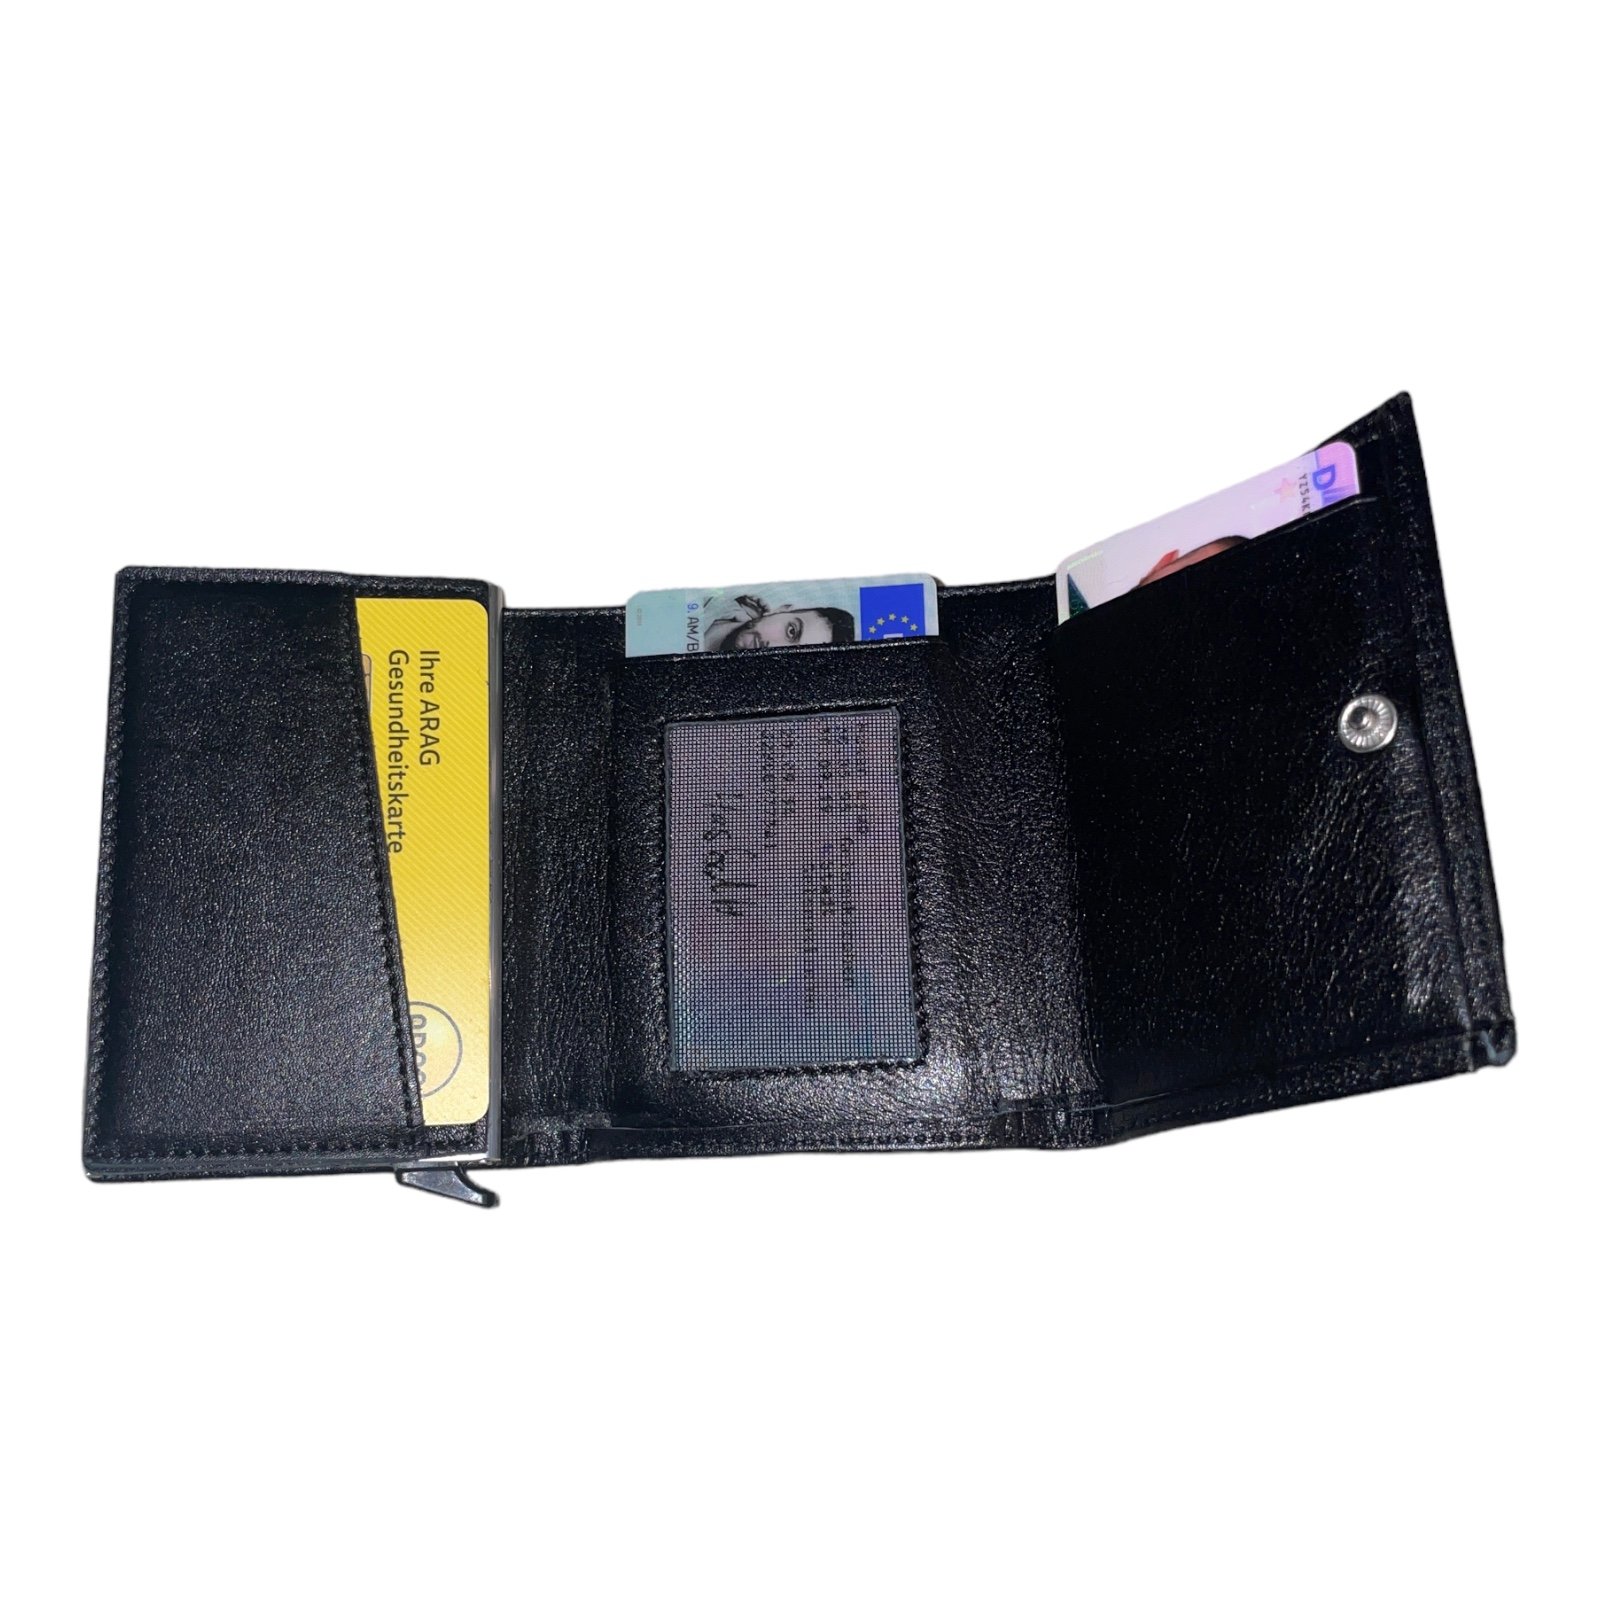 Portmonee-Geldbeutel-Wallet-Qualit-t-Leder-Schwarz-Kreditkartenf-cher-Geldscheinfach-04